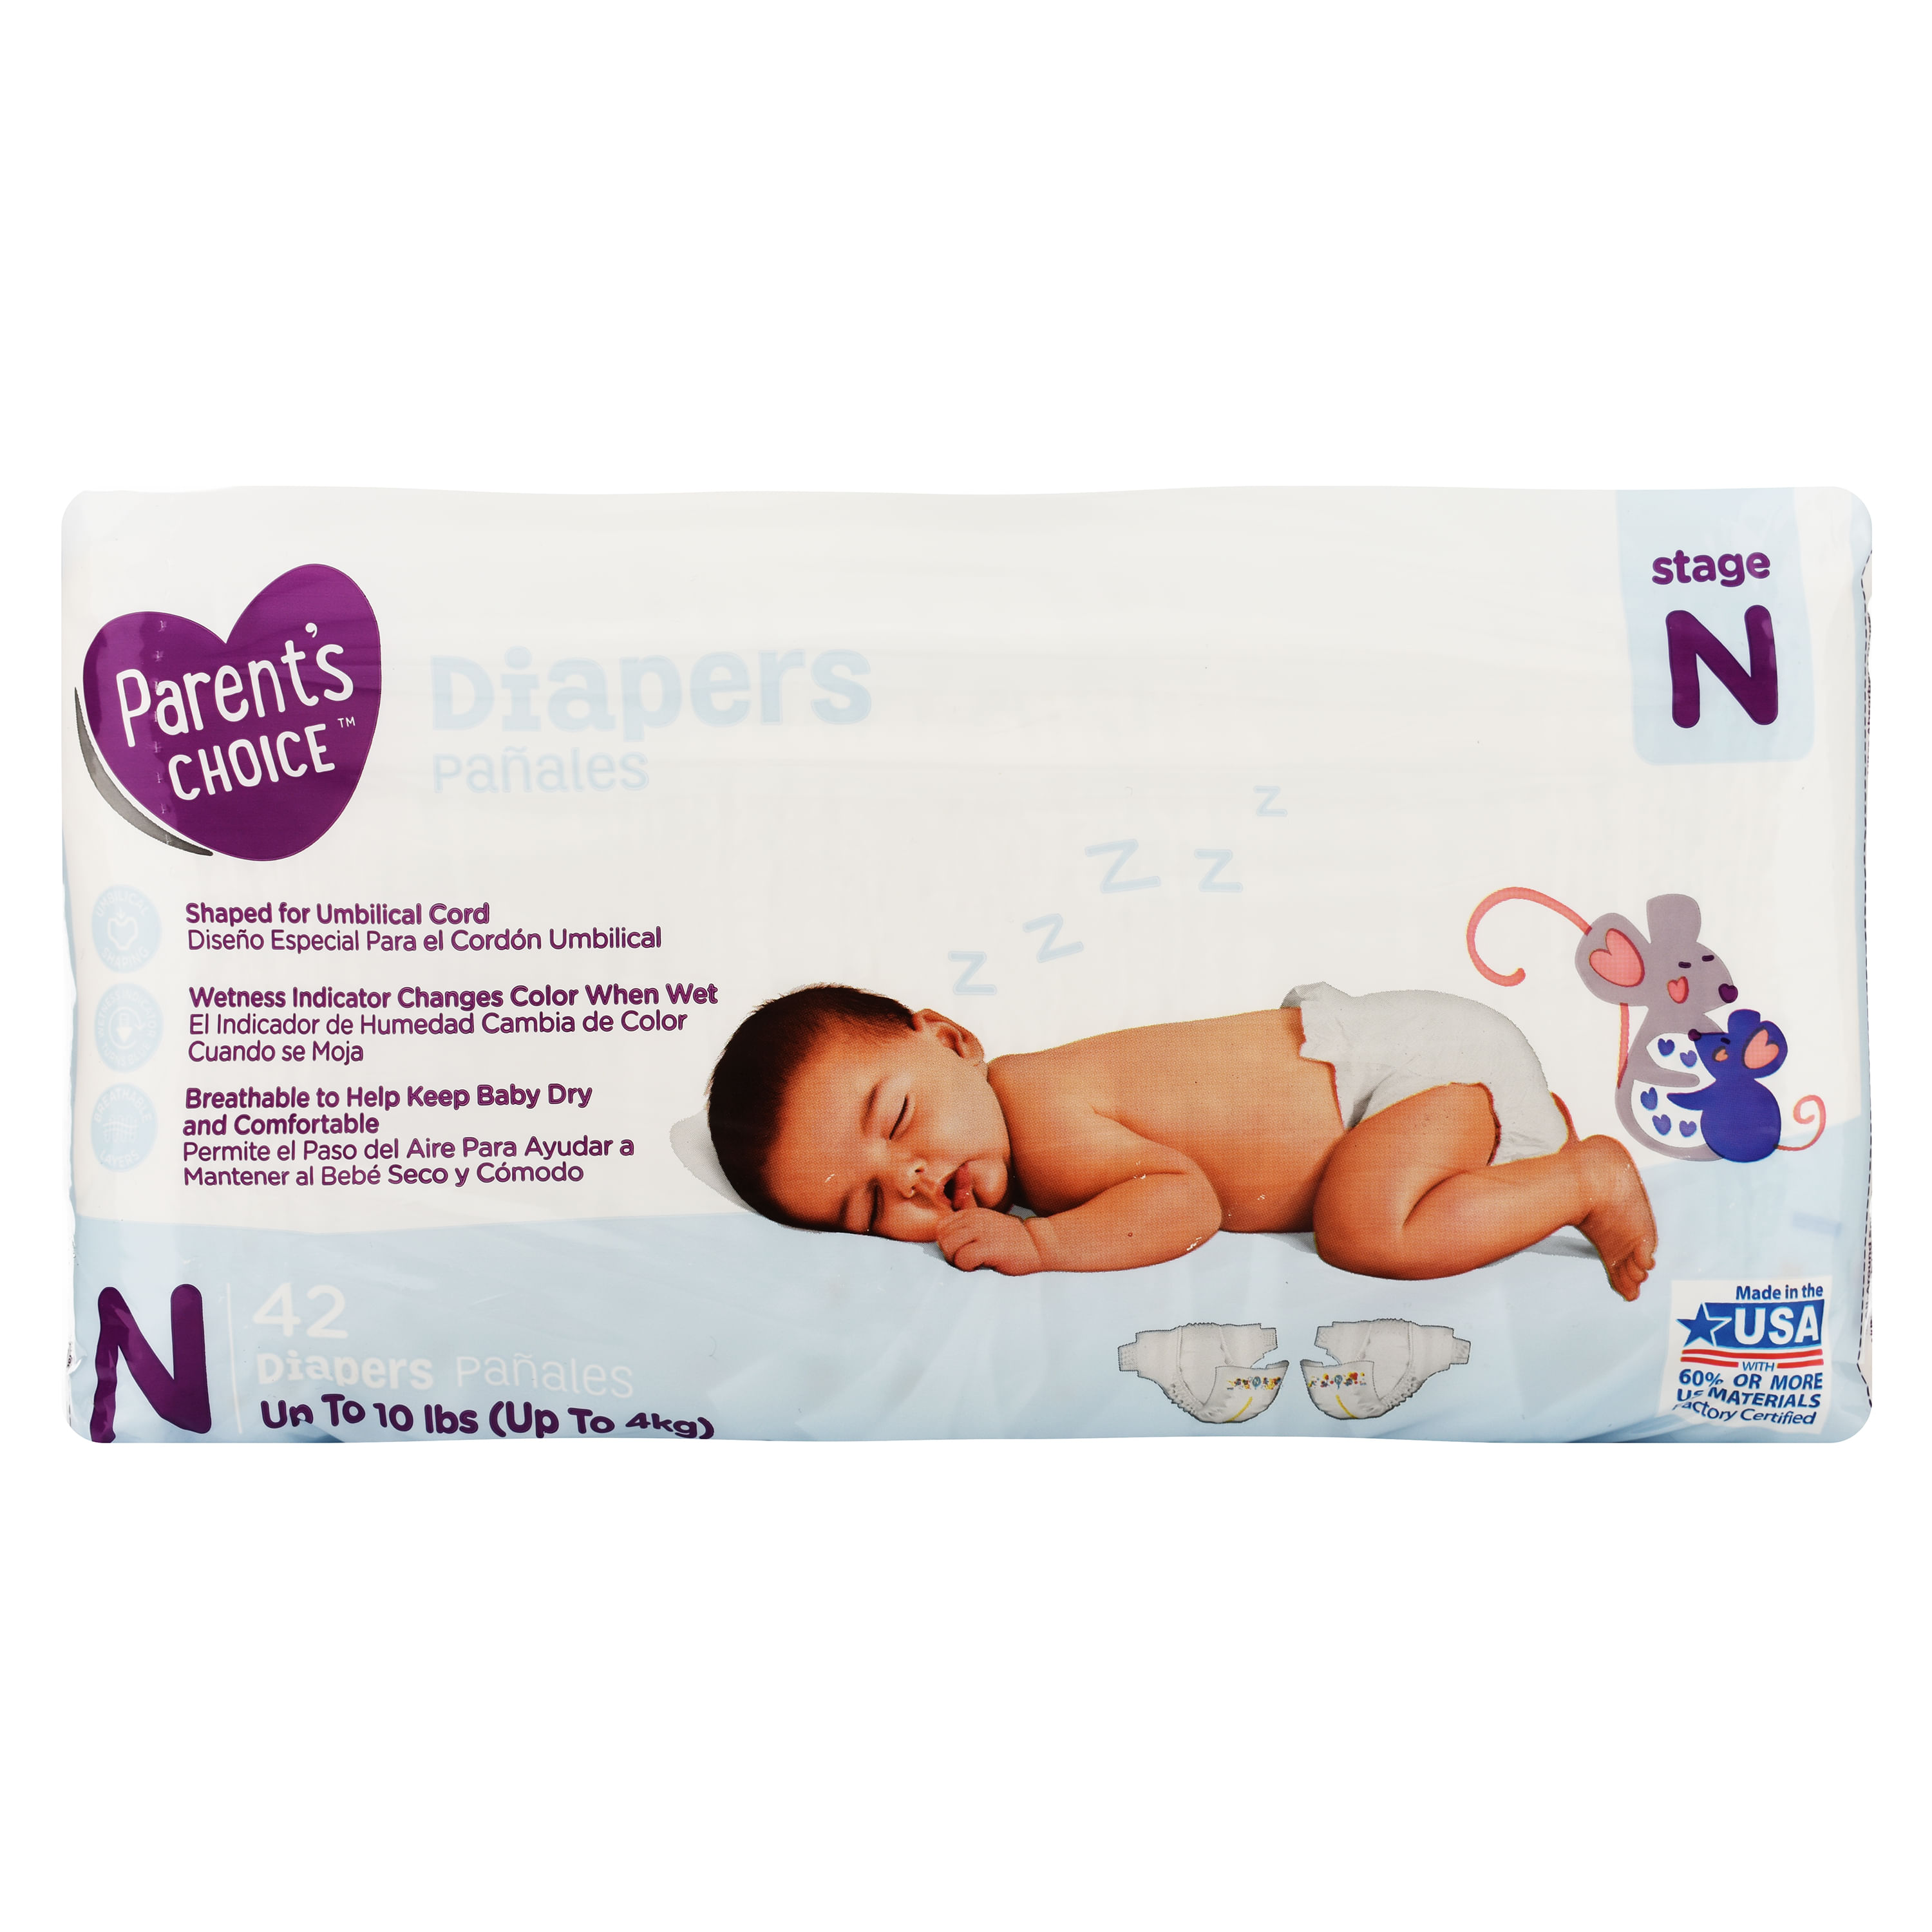 Pa-al-Parent-Choice-Baby-Diaper-Size-0-Nb-42-Unidades-1-7571